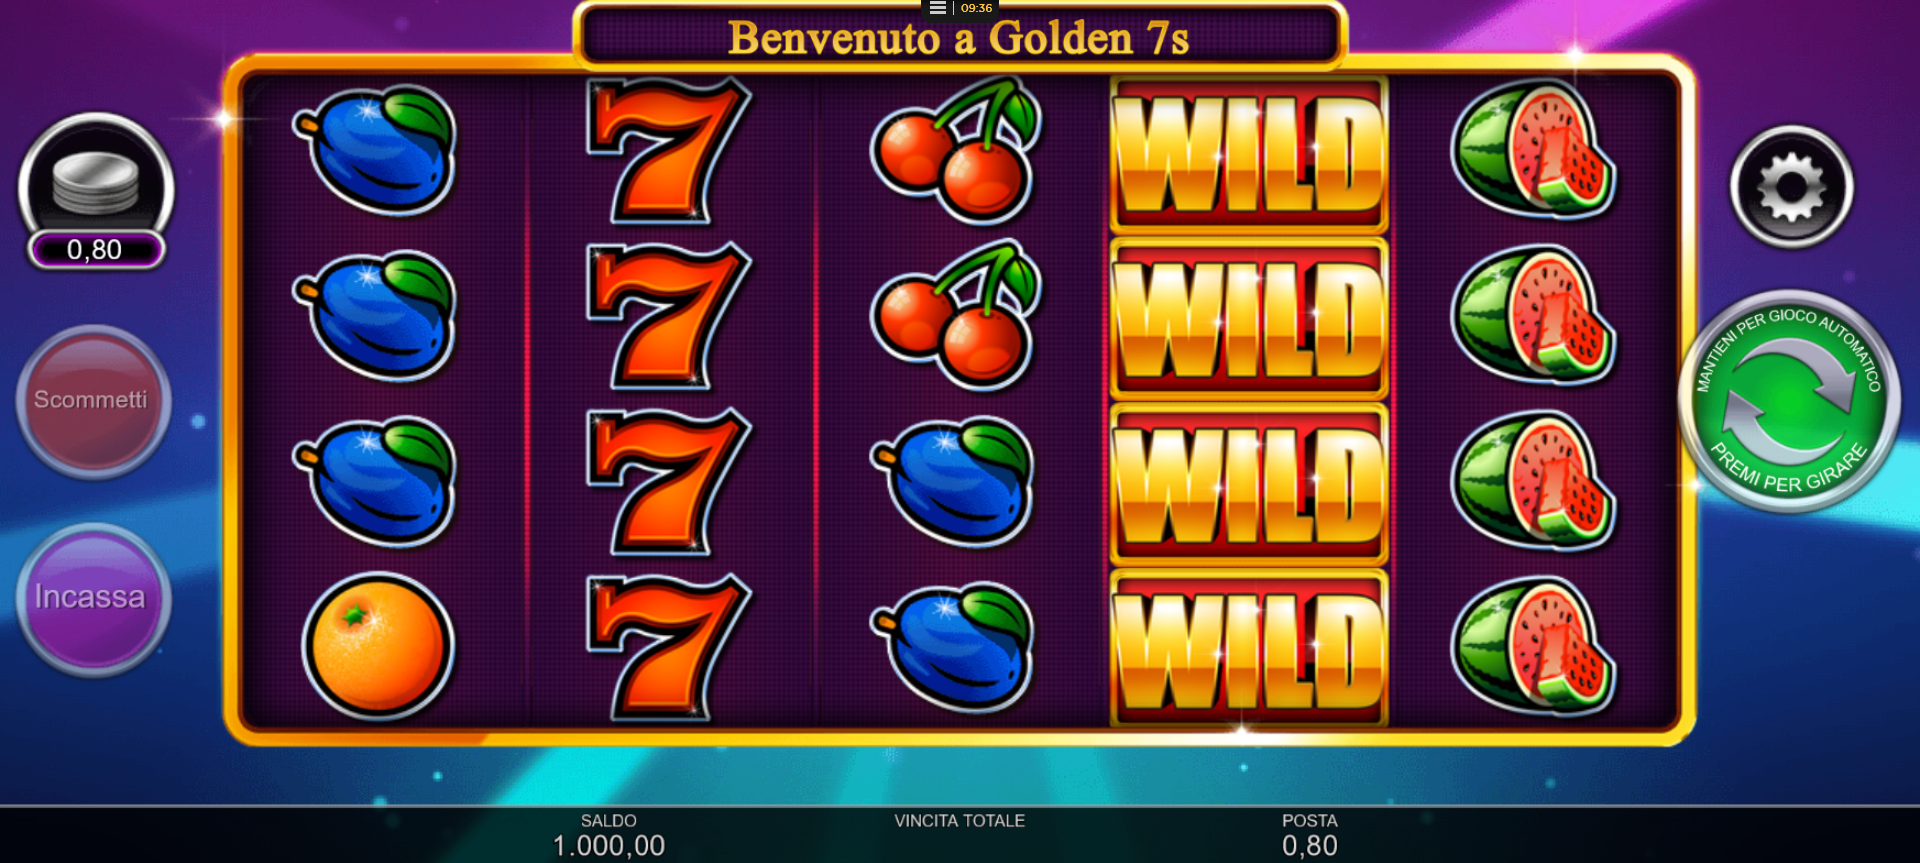 griglia del gioco slot machine golden 7s